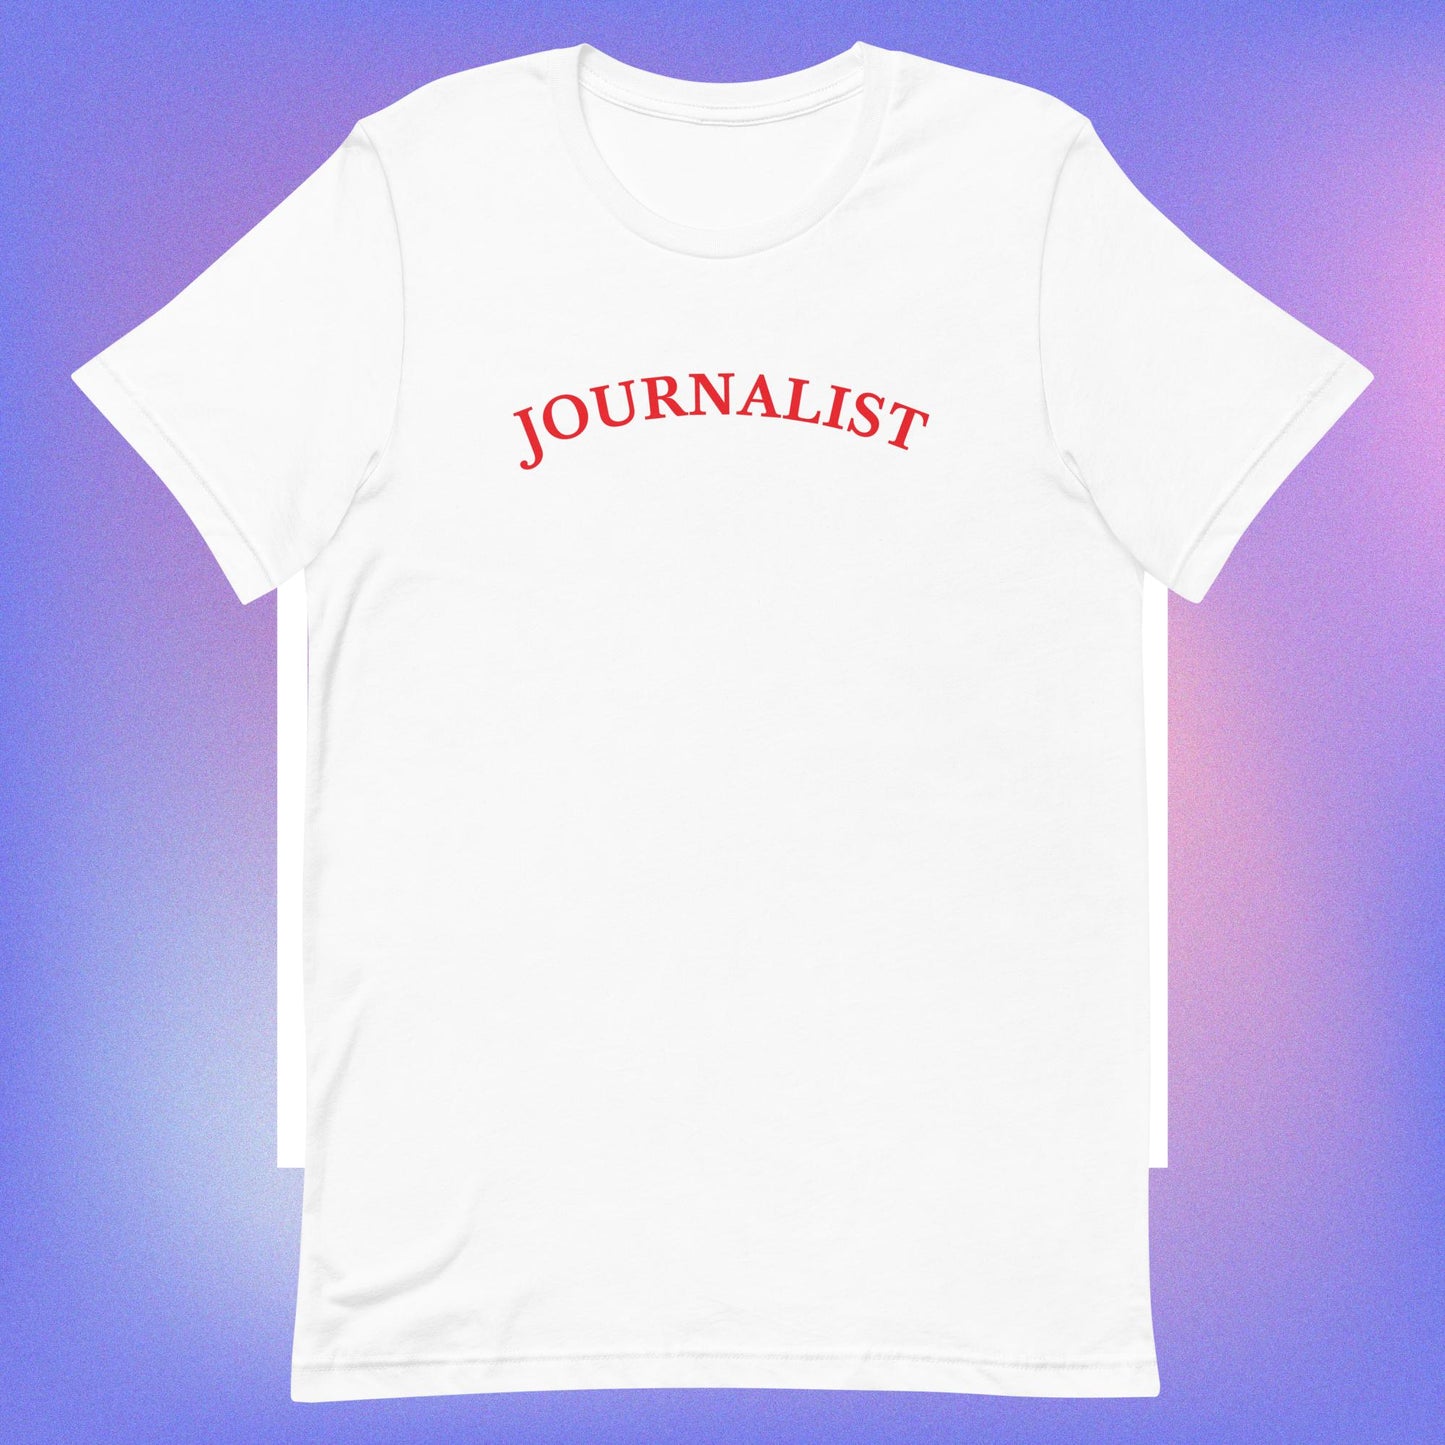 Journalist unisex t-shirt